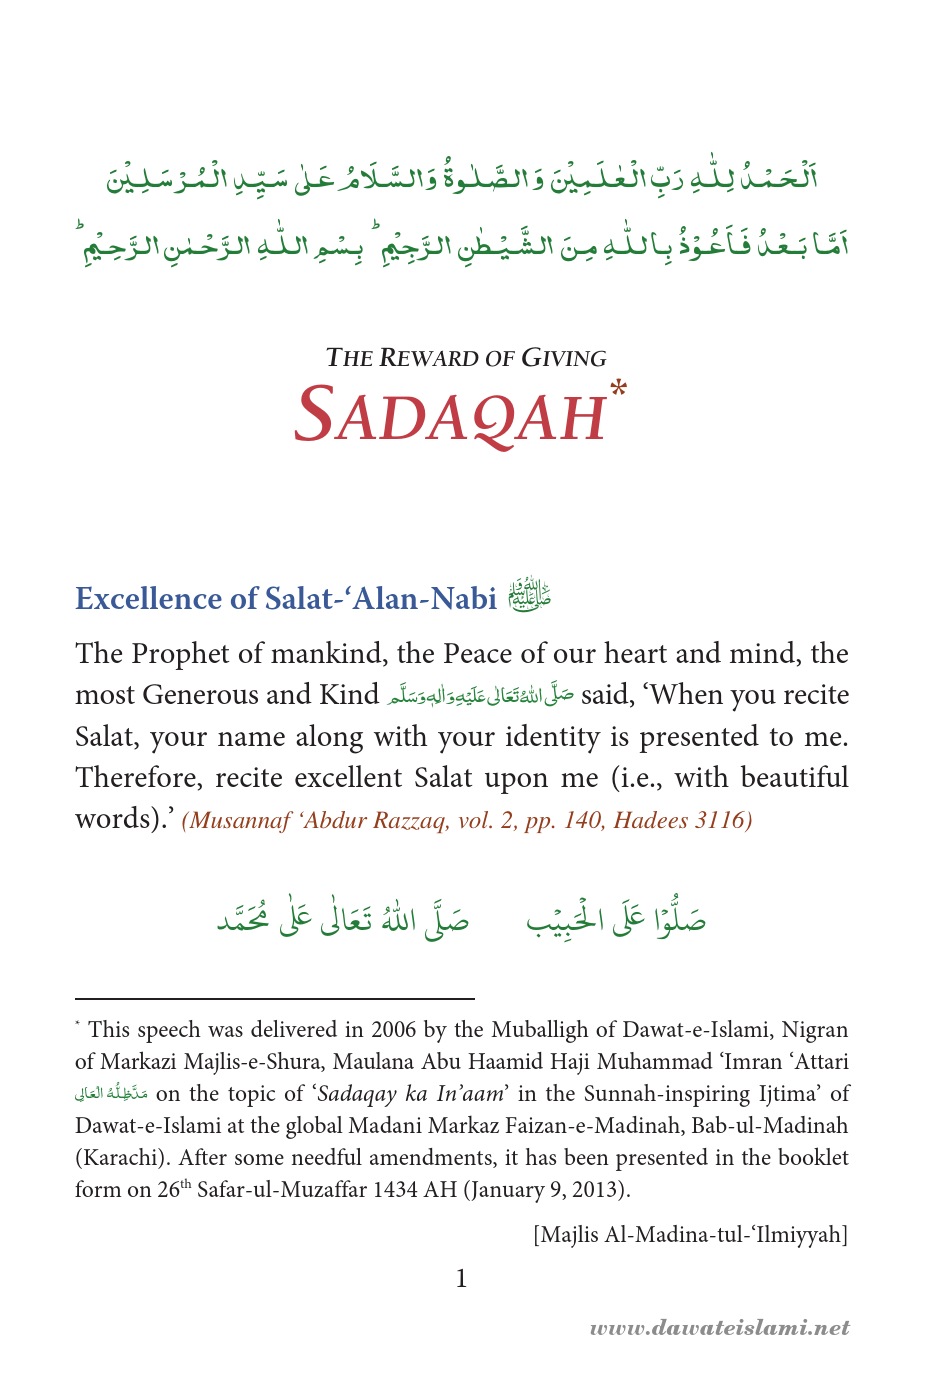 TheRewardOfGivingSadaqah.pdf, 63- pages 